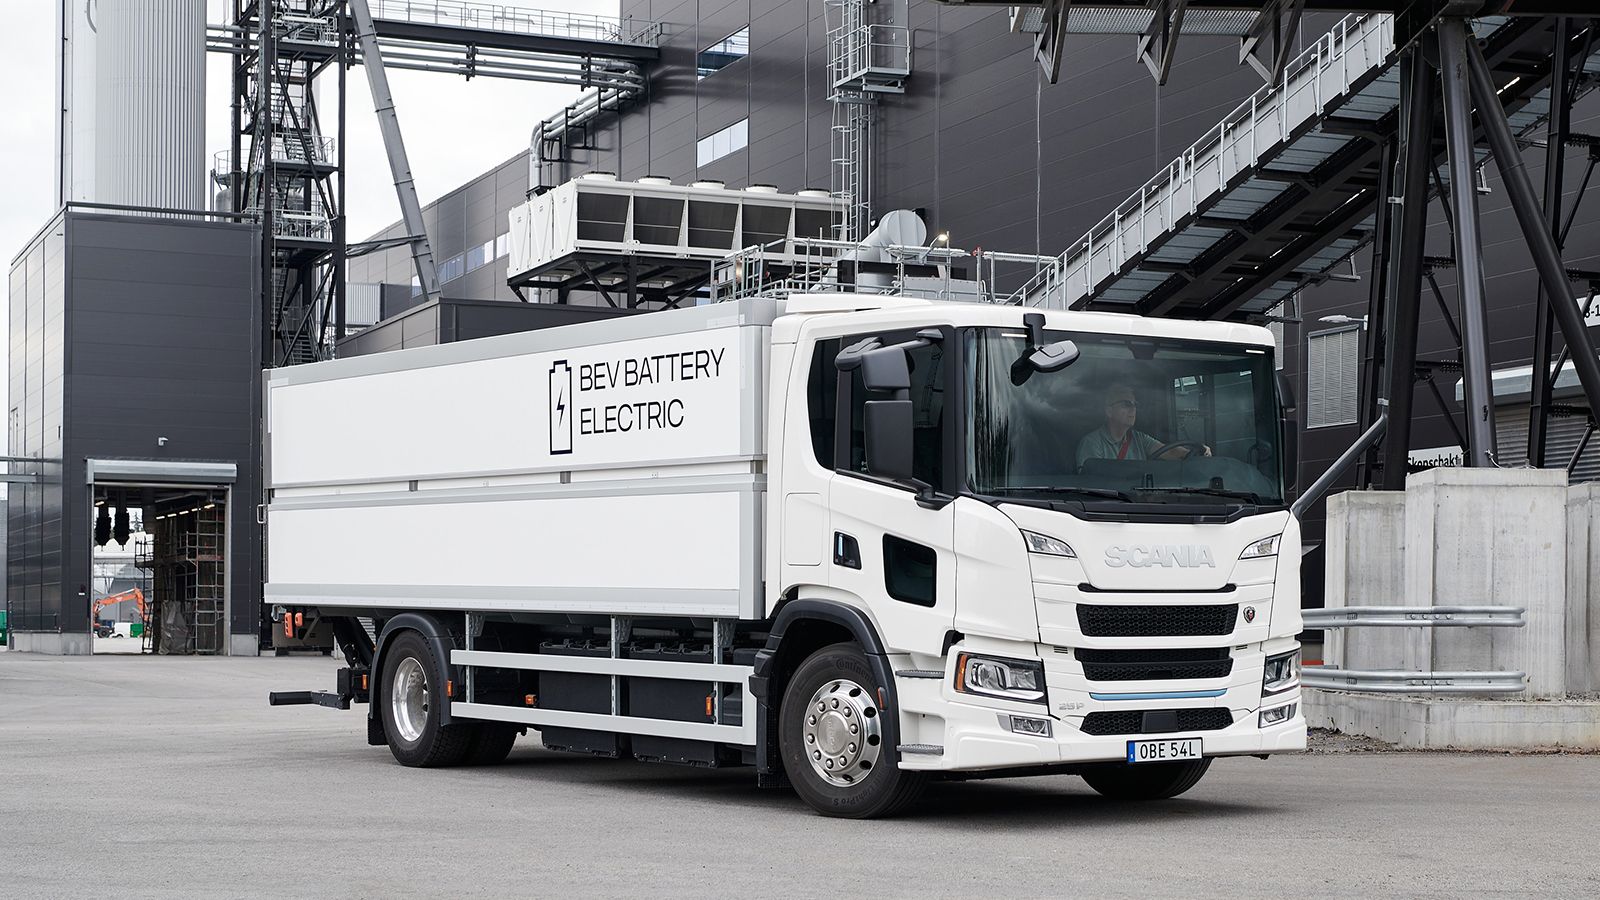 Μέχρι το 2025, η Scania θέλει να έχει ηλεκτροδοτήσει τις περισσότερες δραστηριότητες του κλάδου των μεταφορών.